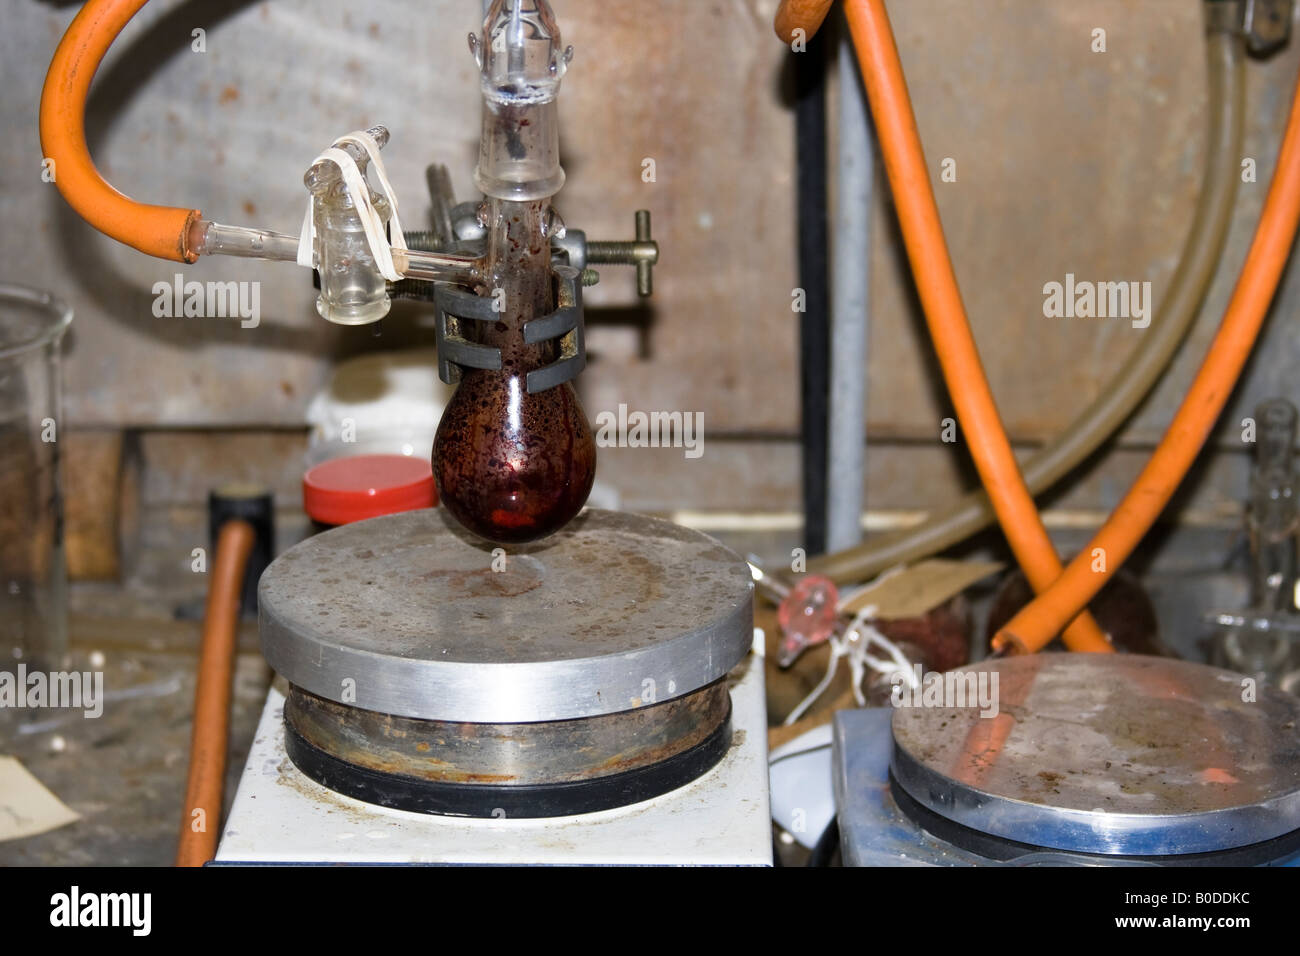 Heating plates - Laboratory equipment Stock Photo